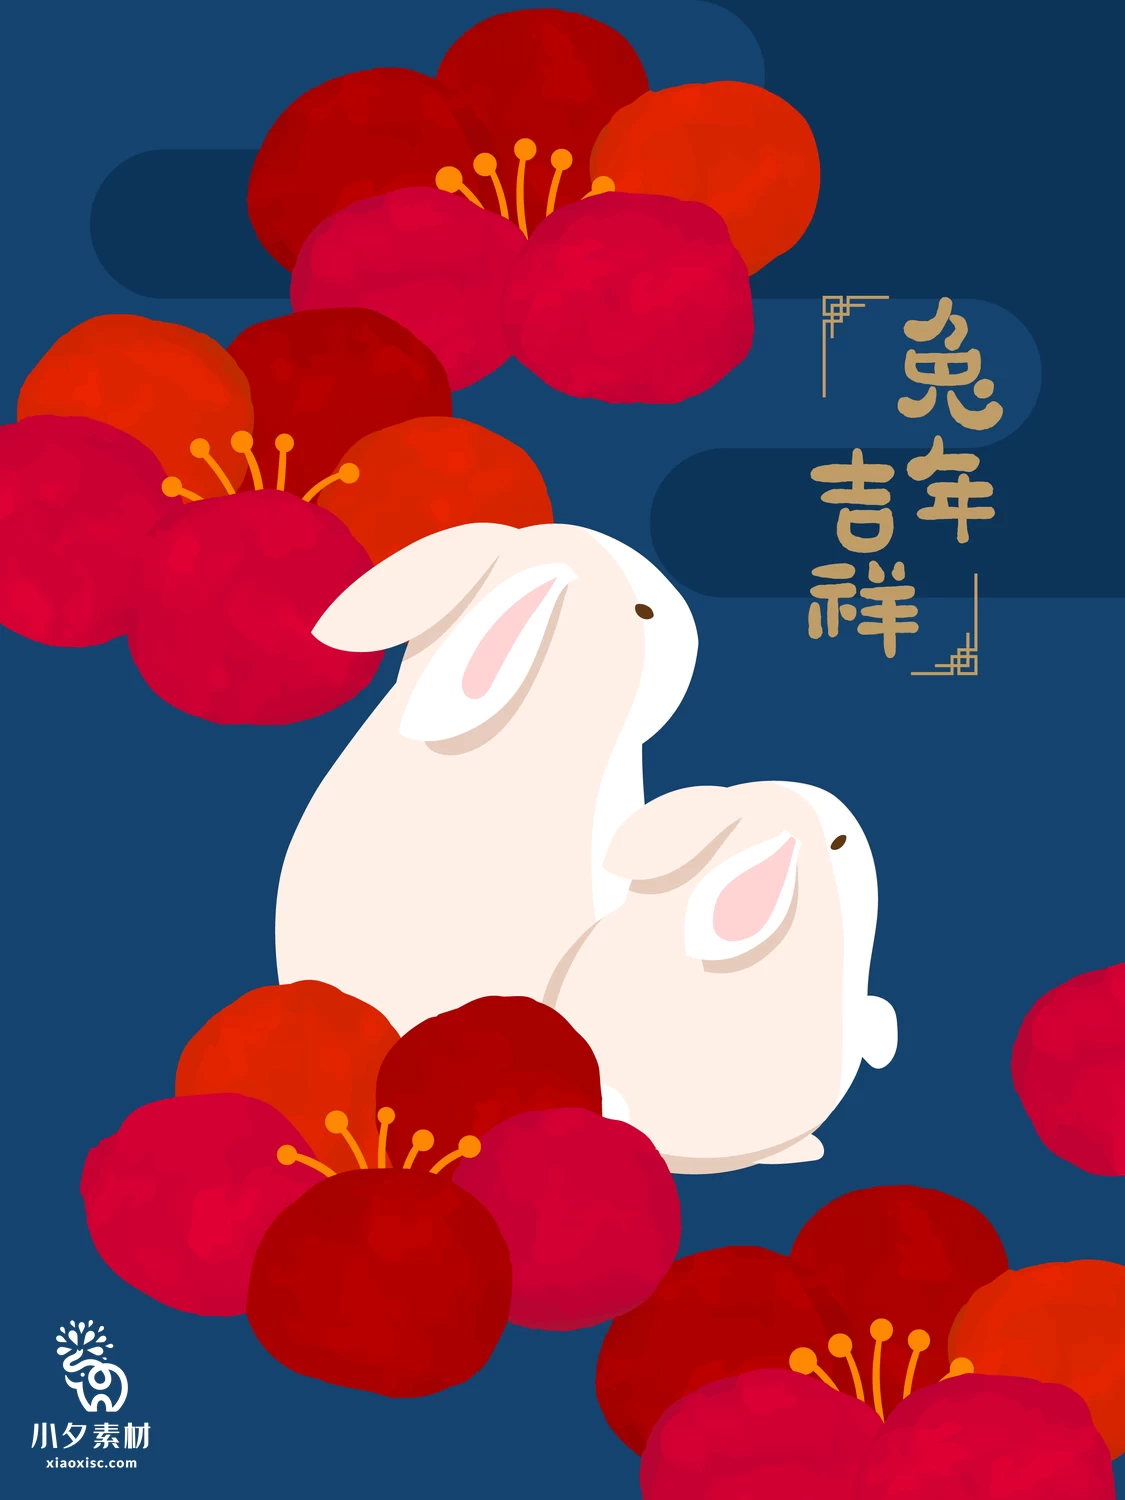 2023年兔年大吉恭贺新春新年快乐兔年吉祥如意插画海报AI矢量素材【005】